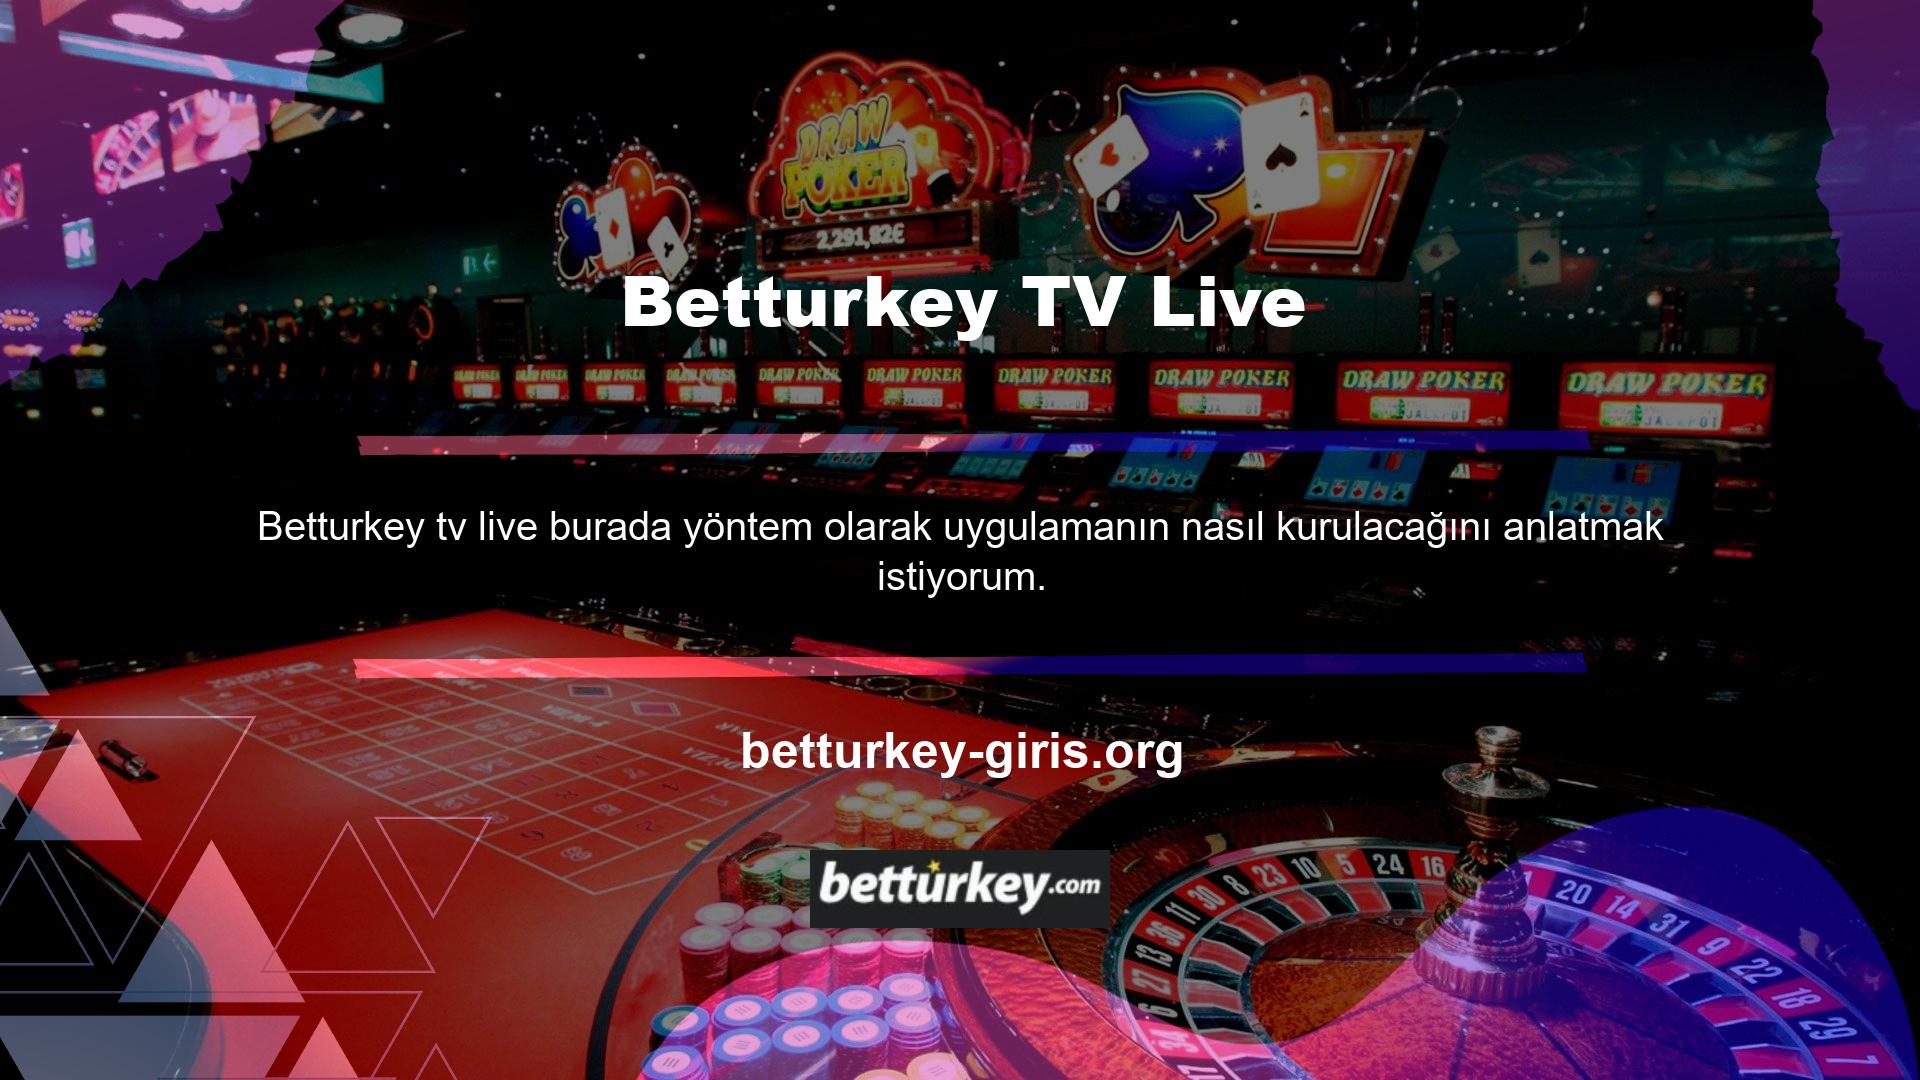 Betturkey TV Canlı İzleme özelliğinin yüklenmesine gerek yoktur